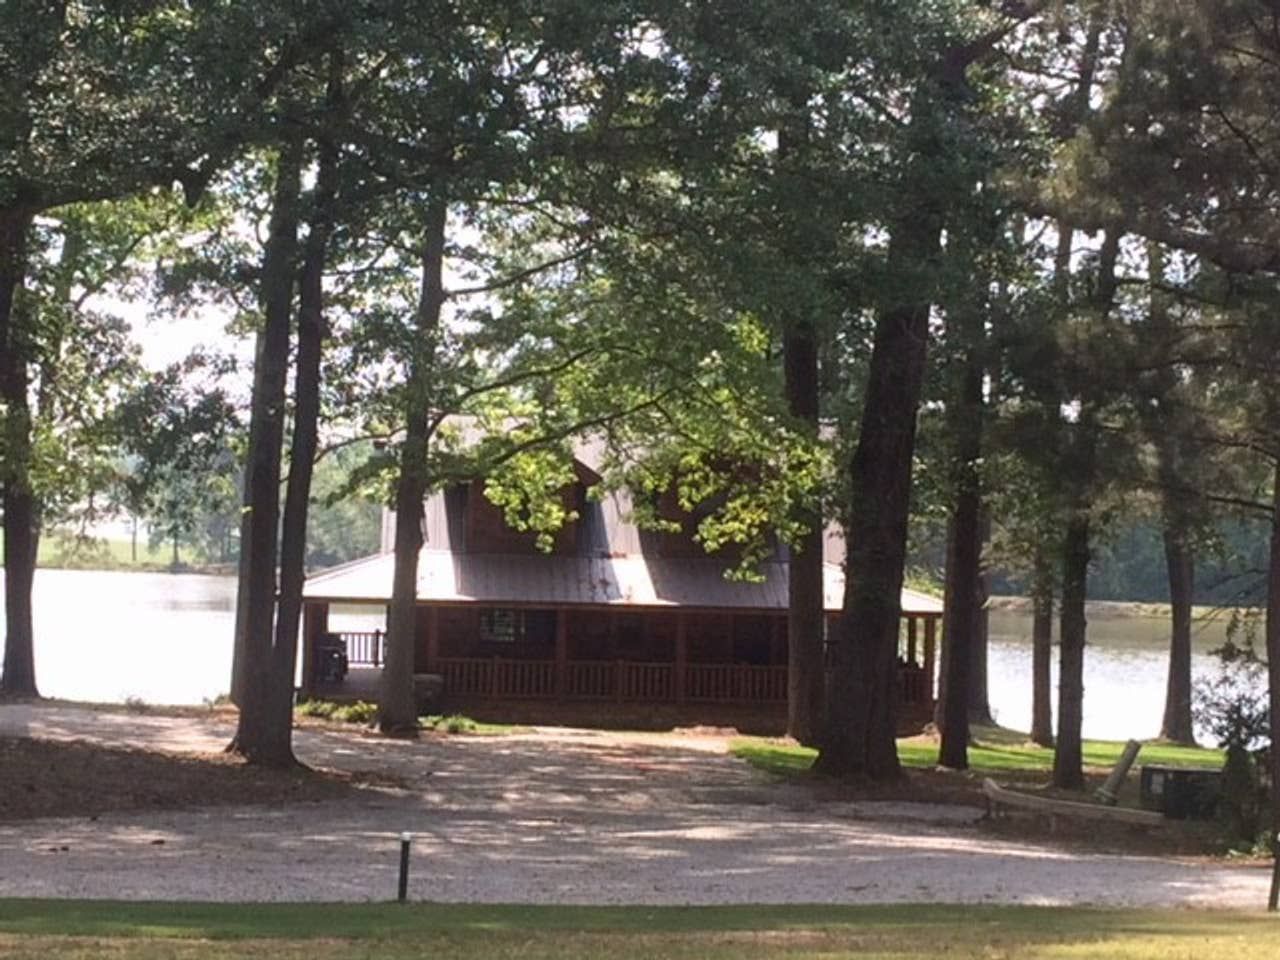 Tony Stark's cabin in Endgame by the lake